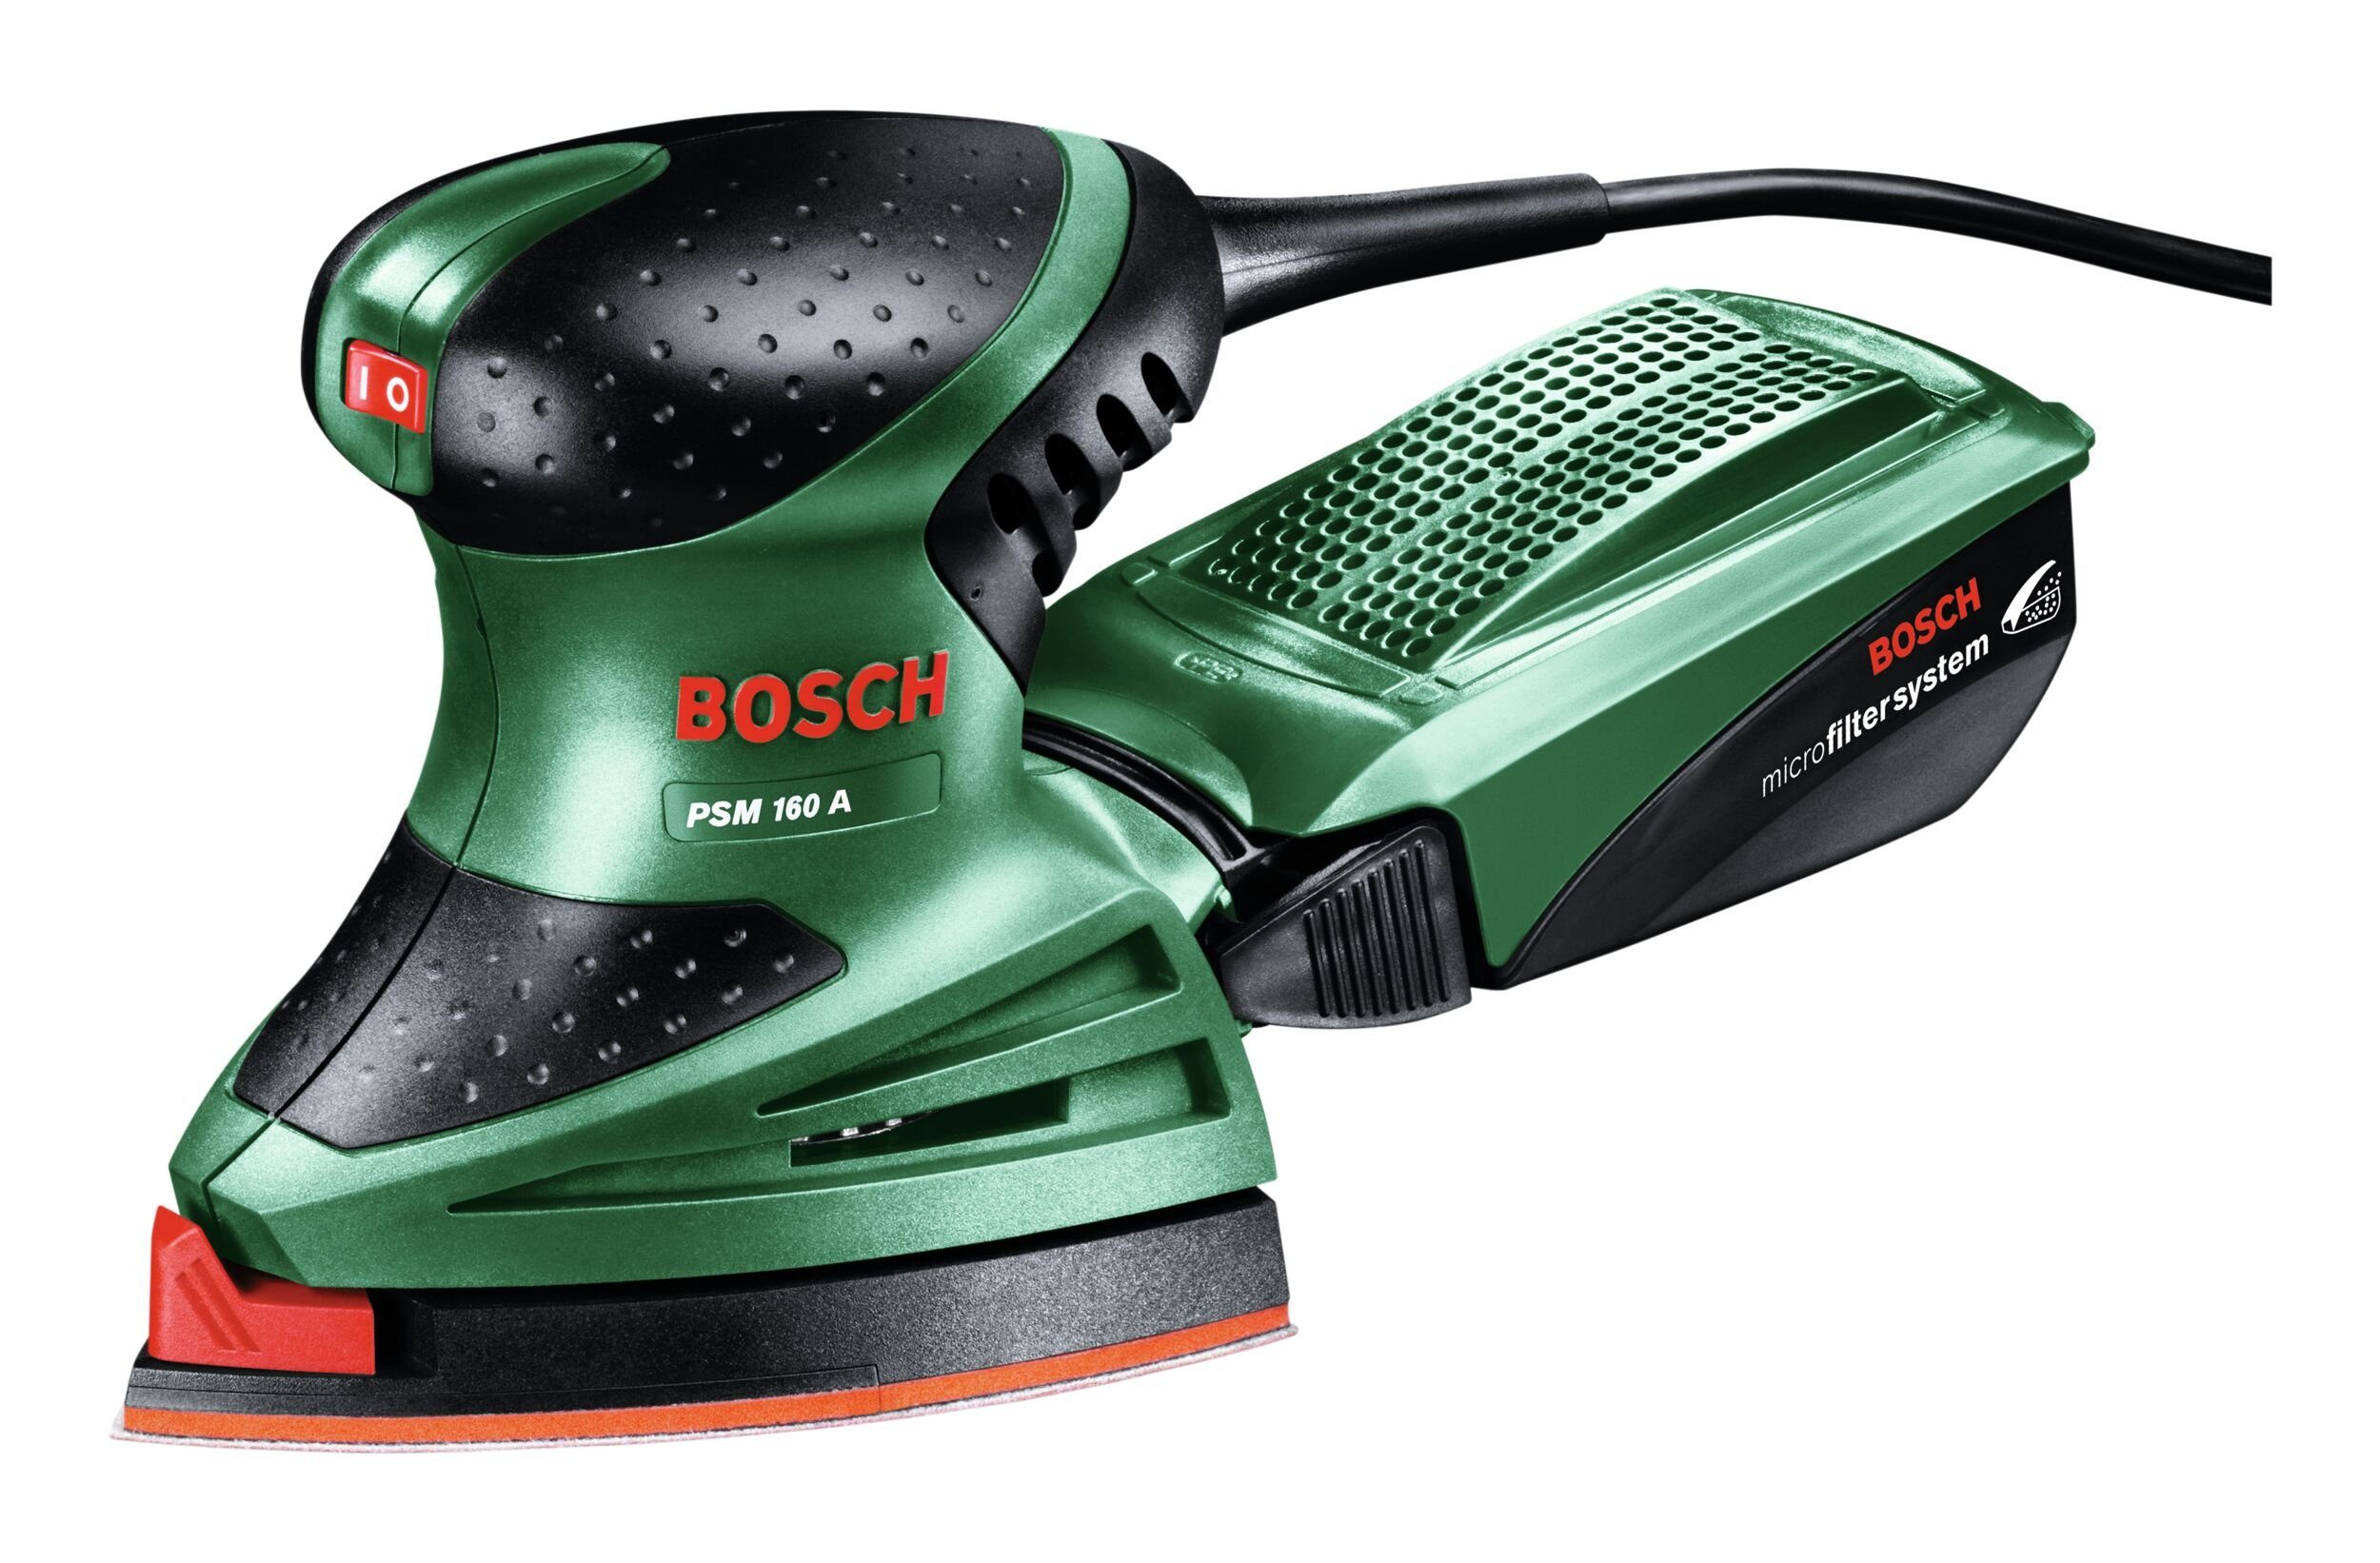 Bosch Home & Garden Multischleifer U/min, - im PSM Deltaschleifer A, Karton 160 24000